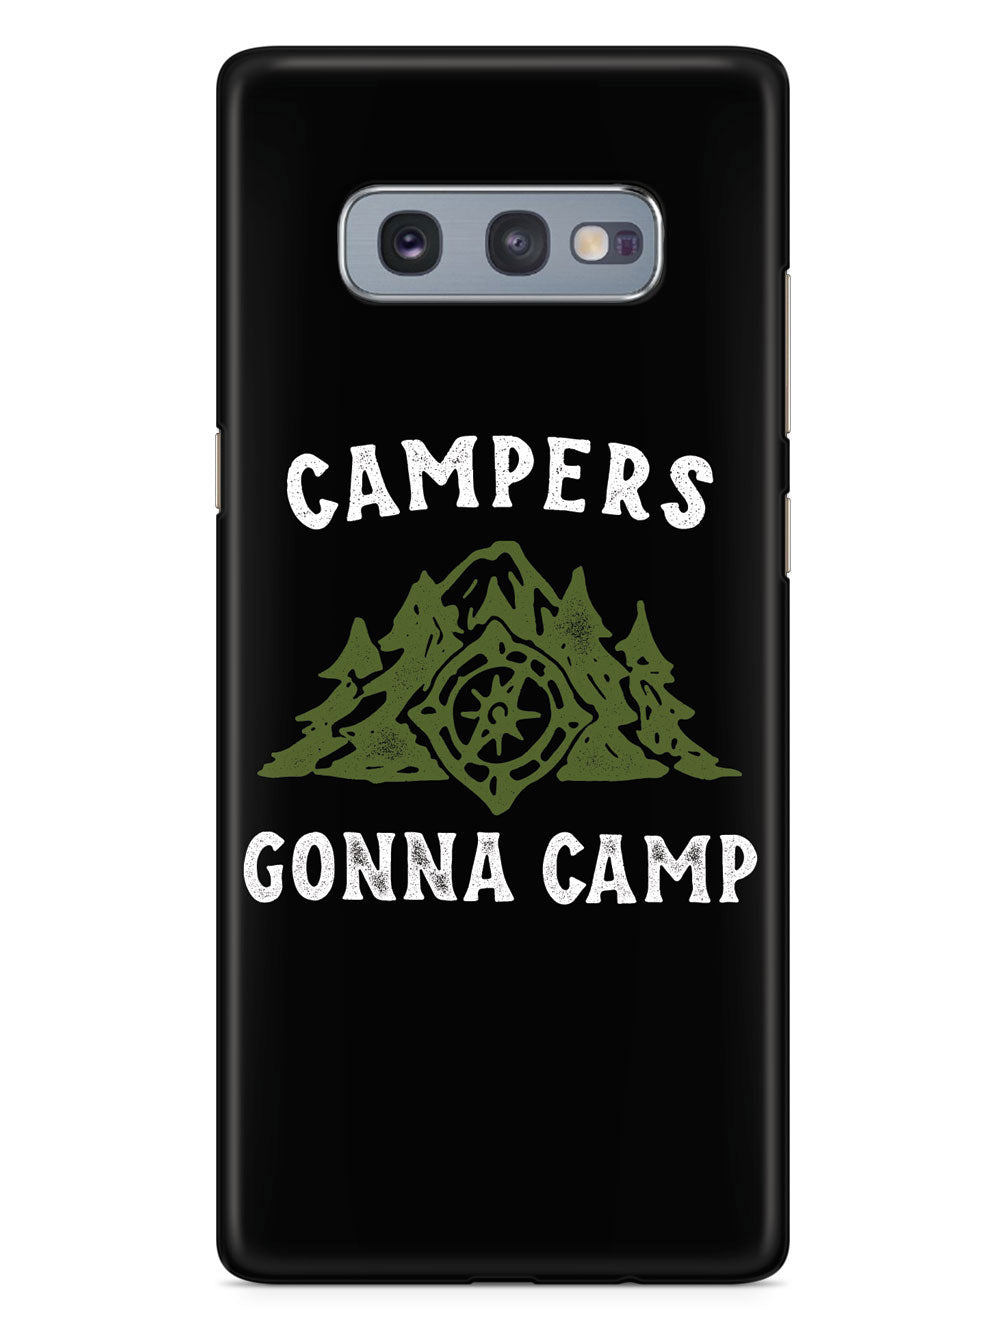 Campers Gonna Camp - Black Case